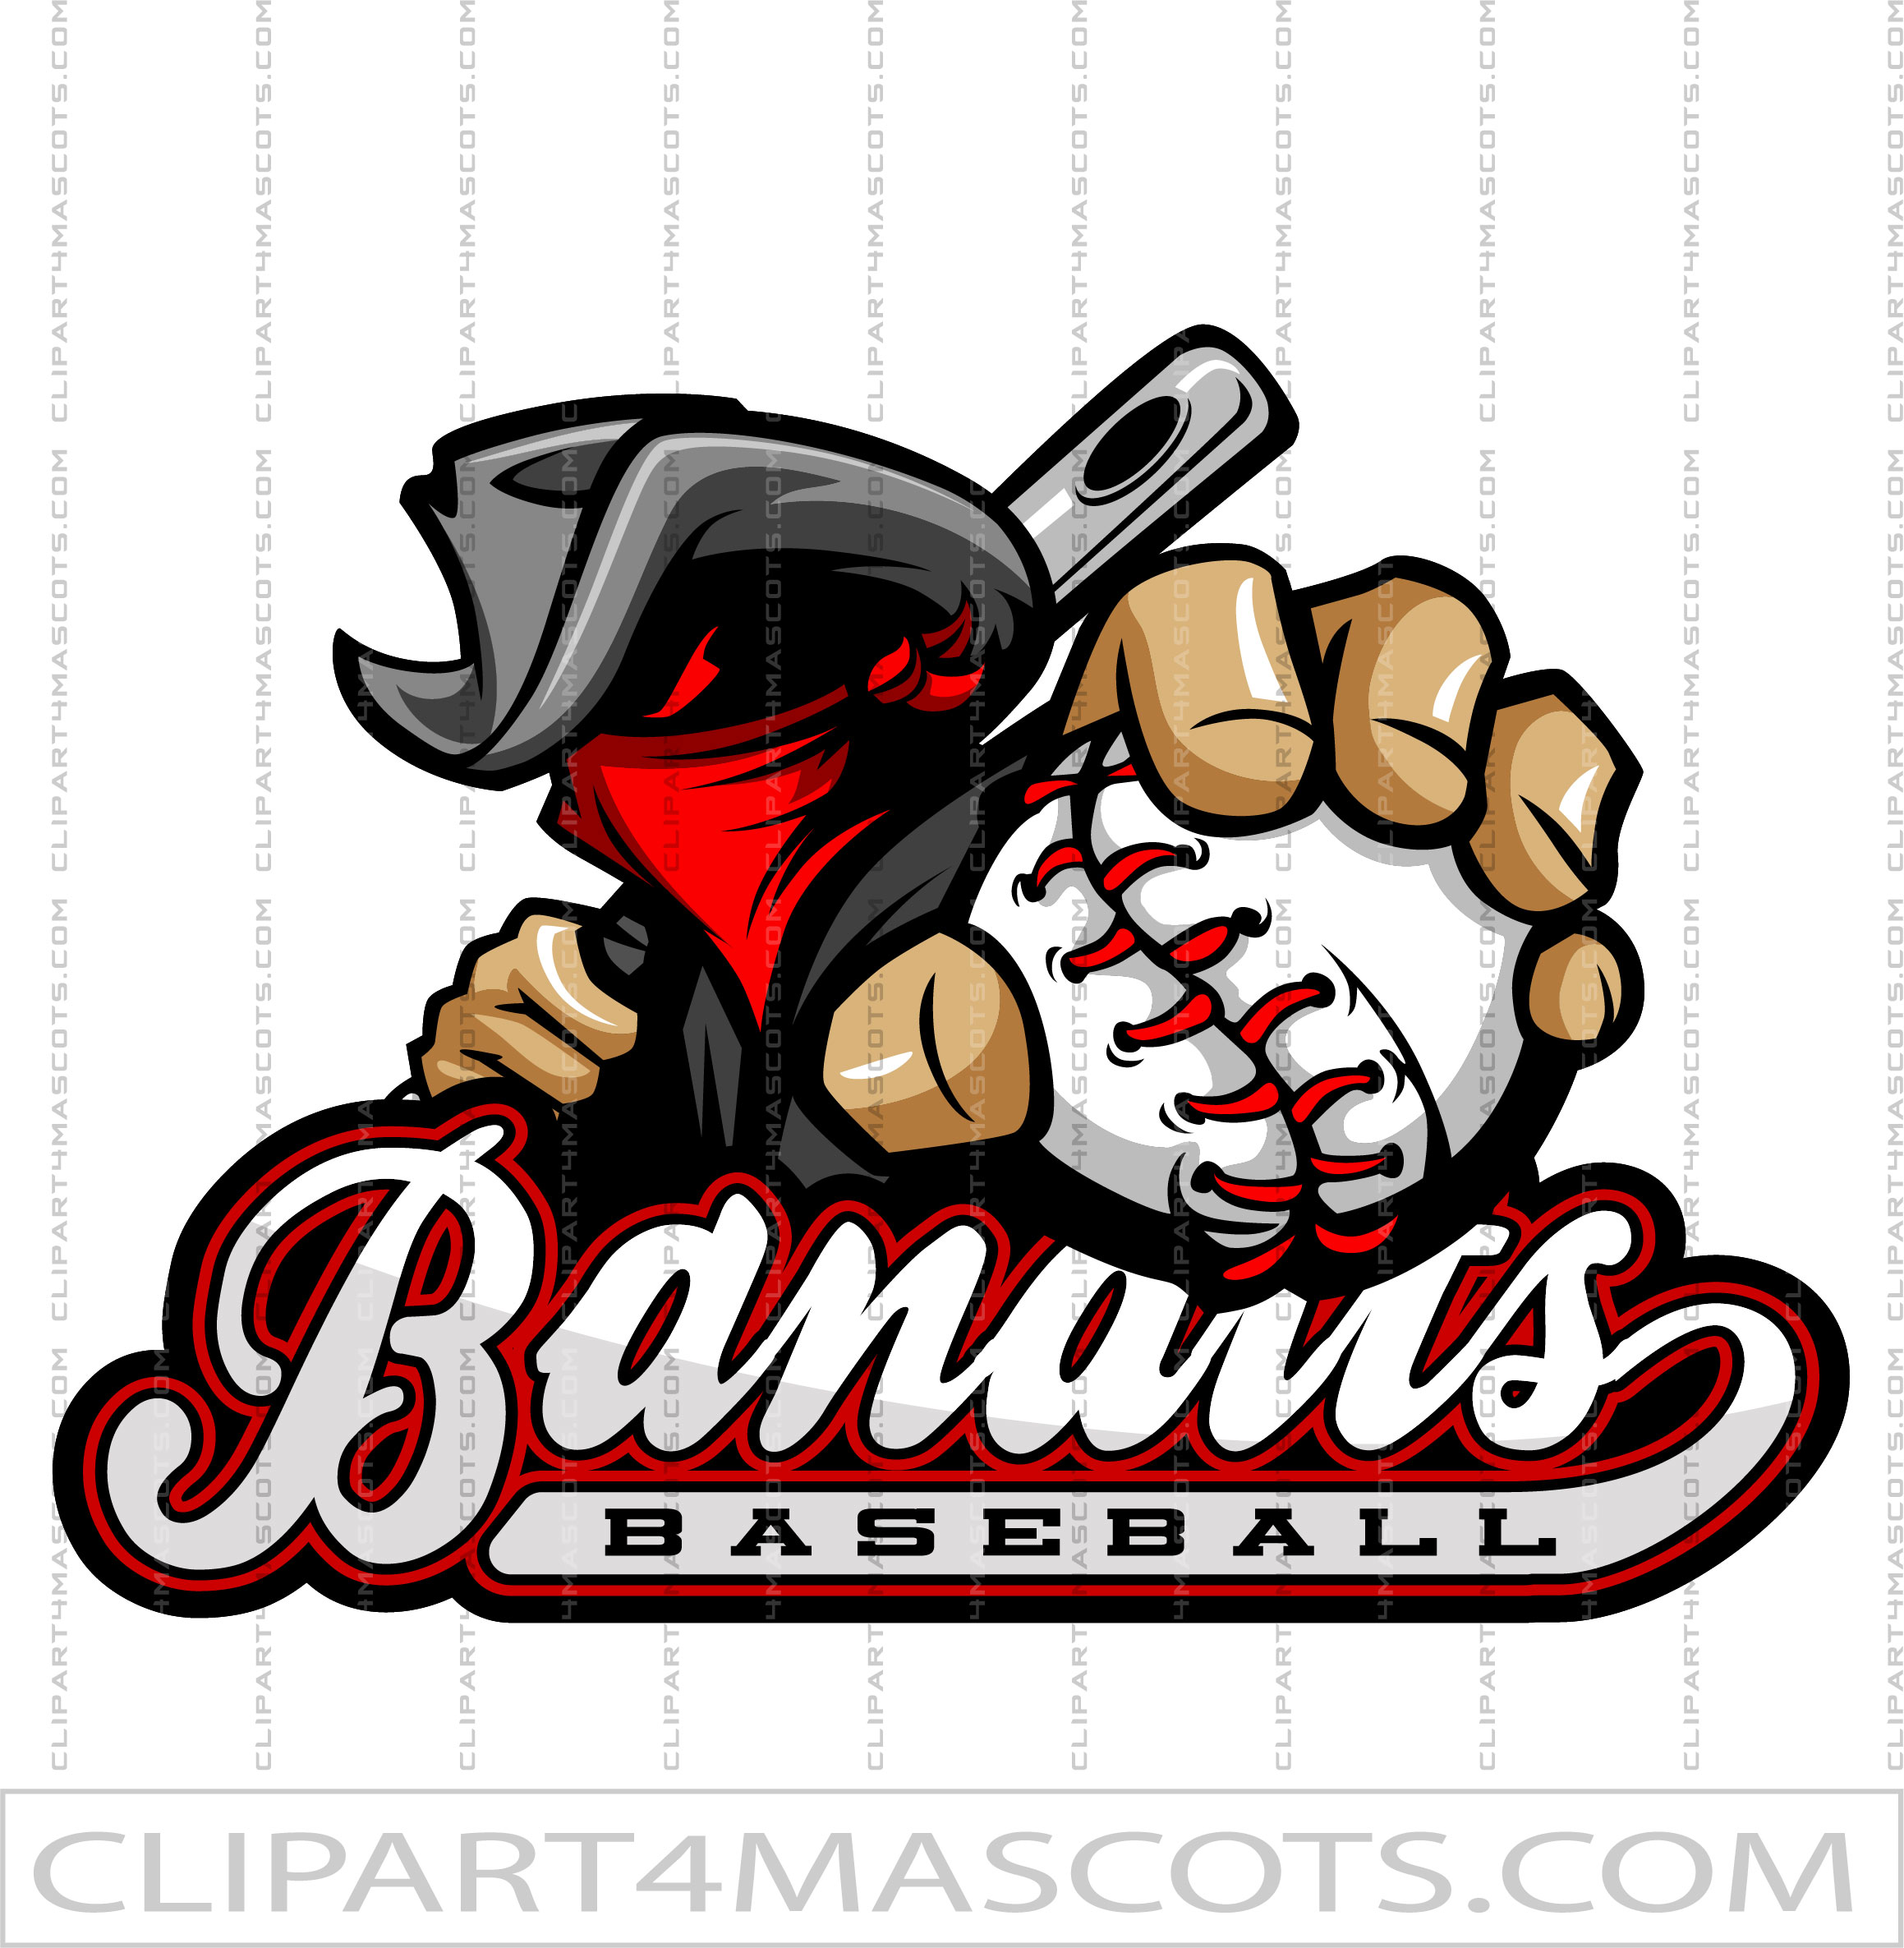 Bandits Baseball Team Logo